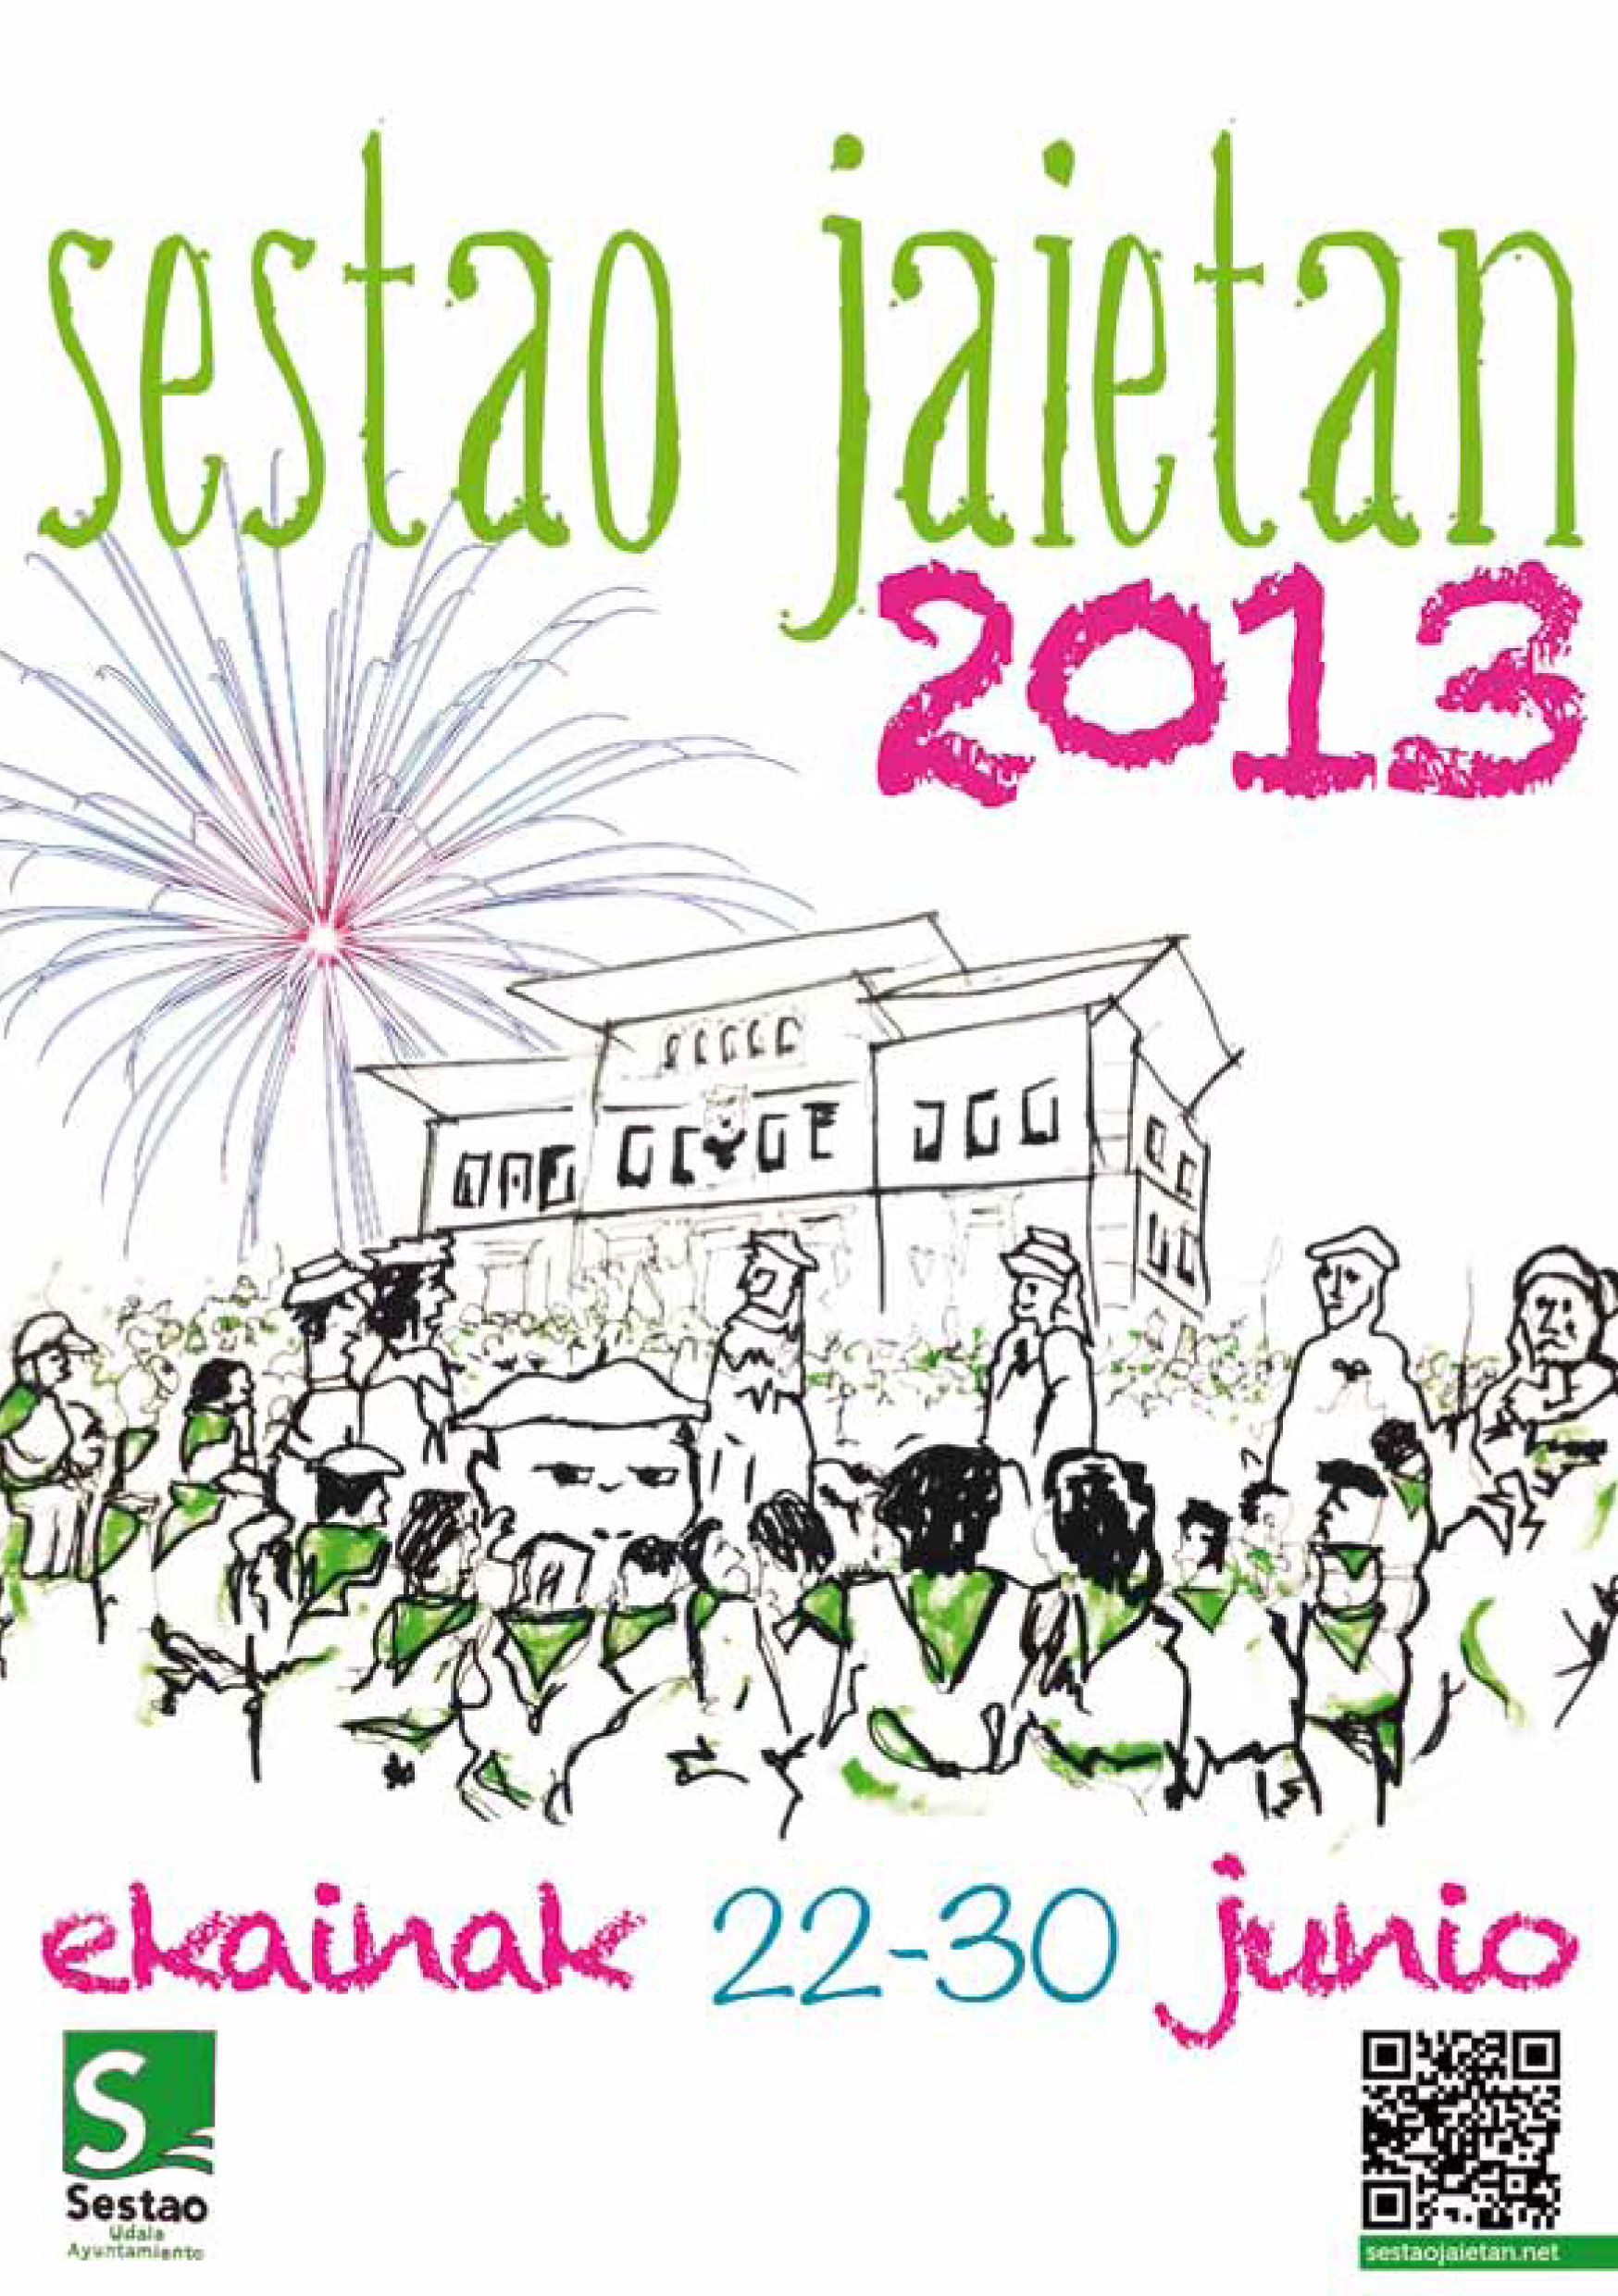 Cartel de las fiestas de Sestao 2013. Foto: Ayuntamiento de Sestao.